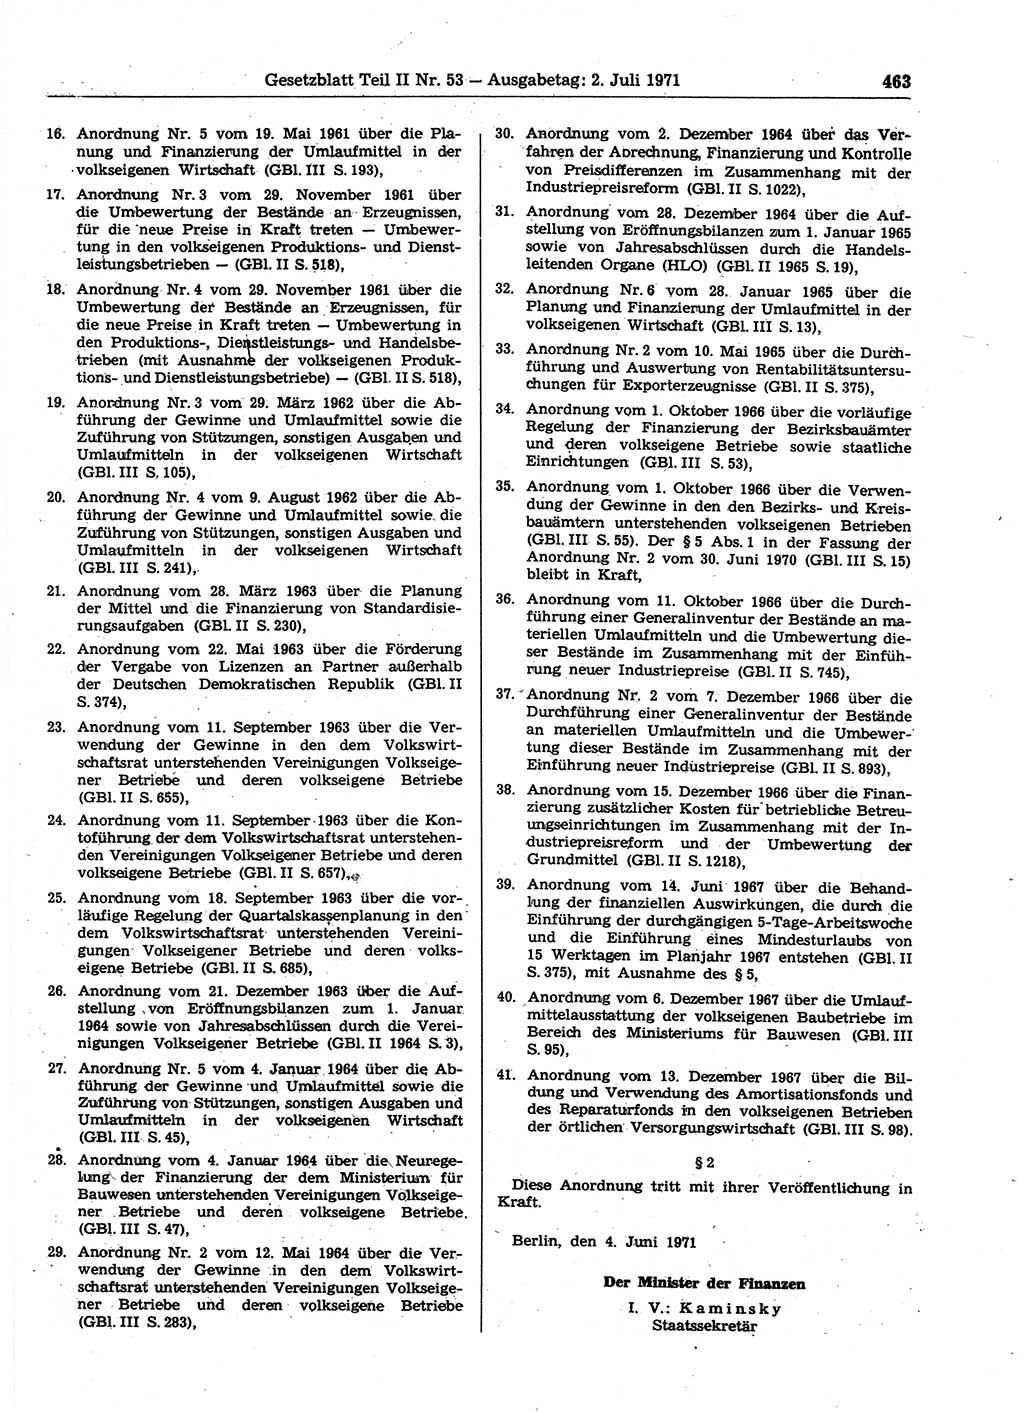 Gesetzblatt (GBl.) der Deutschen Demokratischen Republik (DDR) Teil ⅠⅠ 1971, Seite 463 (GBl. DDR ⅠⅠ 1971, S. 463)